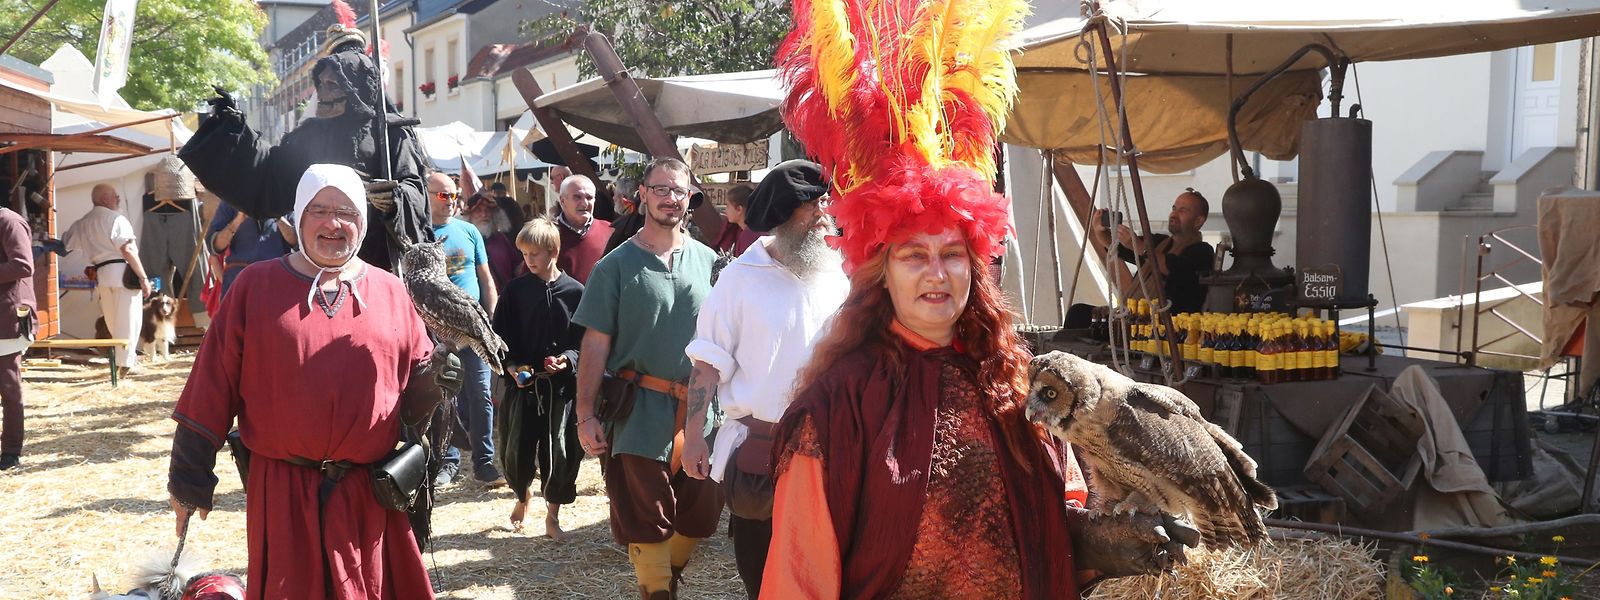 Das Budersberger Burgfest hat sich zum größten Mittelalterfest in der Region entwickelt.